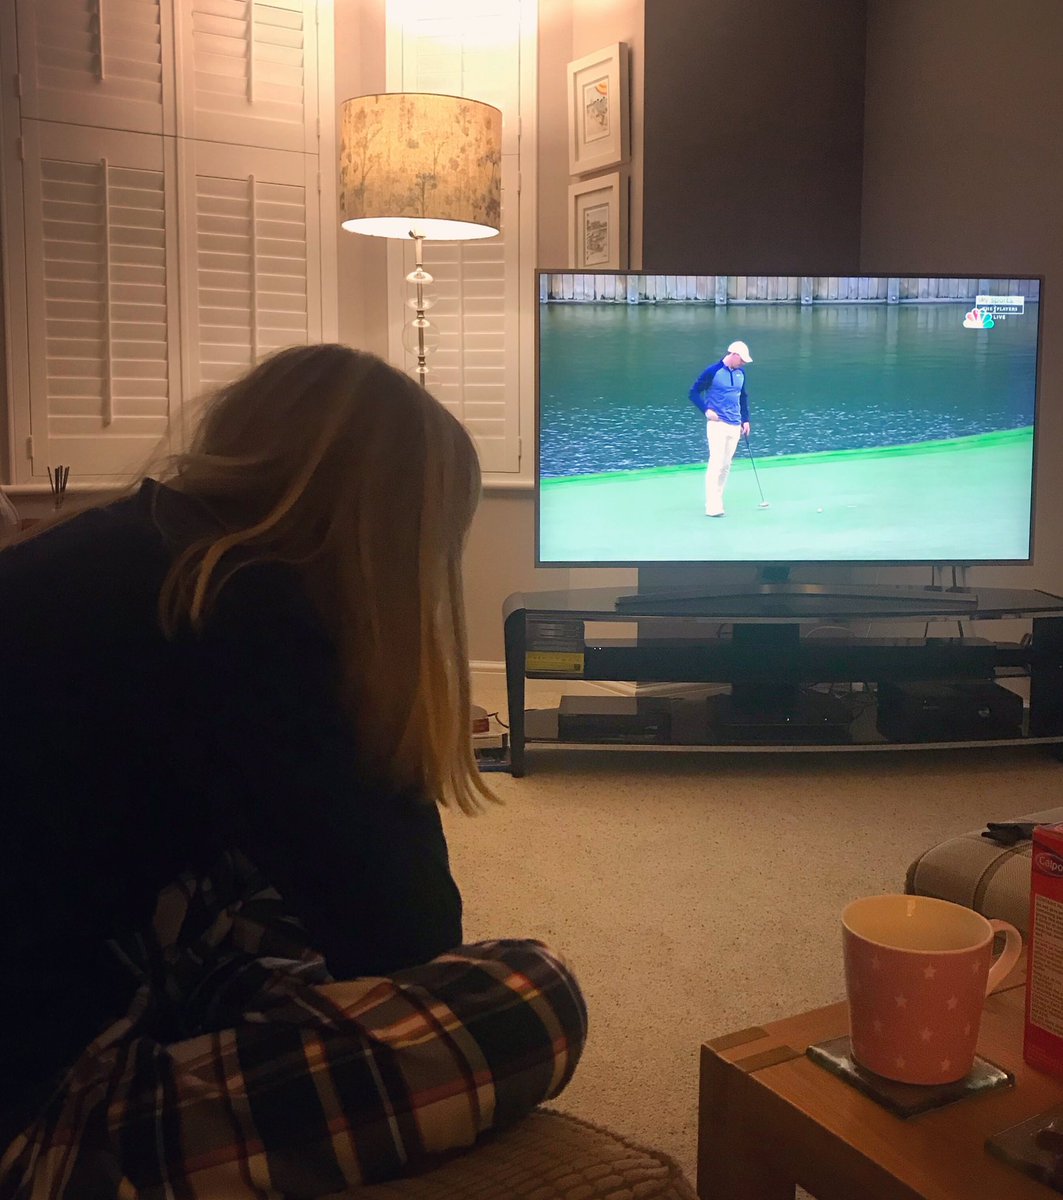 Watching her hero win @McIlroyRory #myhero #rors #golfinggirl #notgoingtobedtilitsfinished